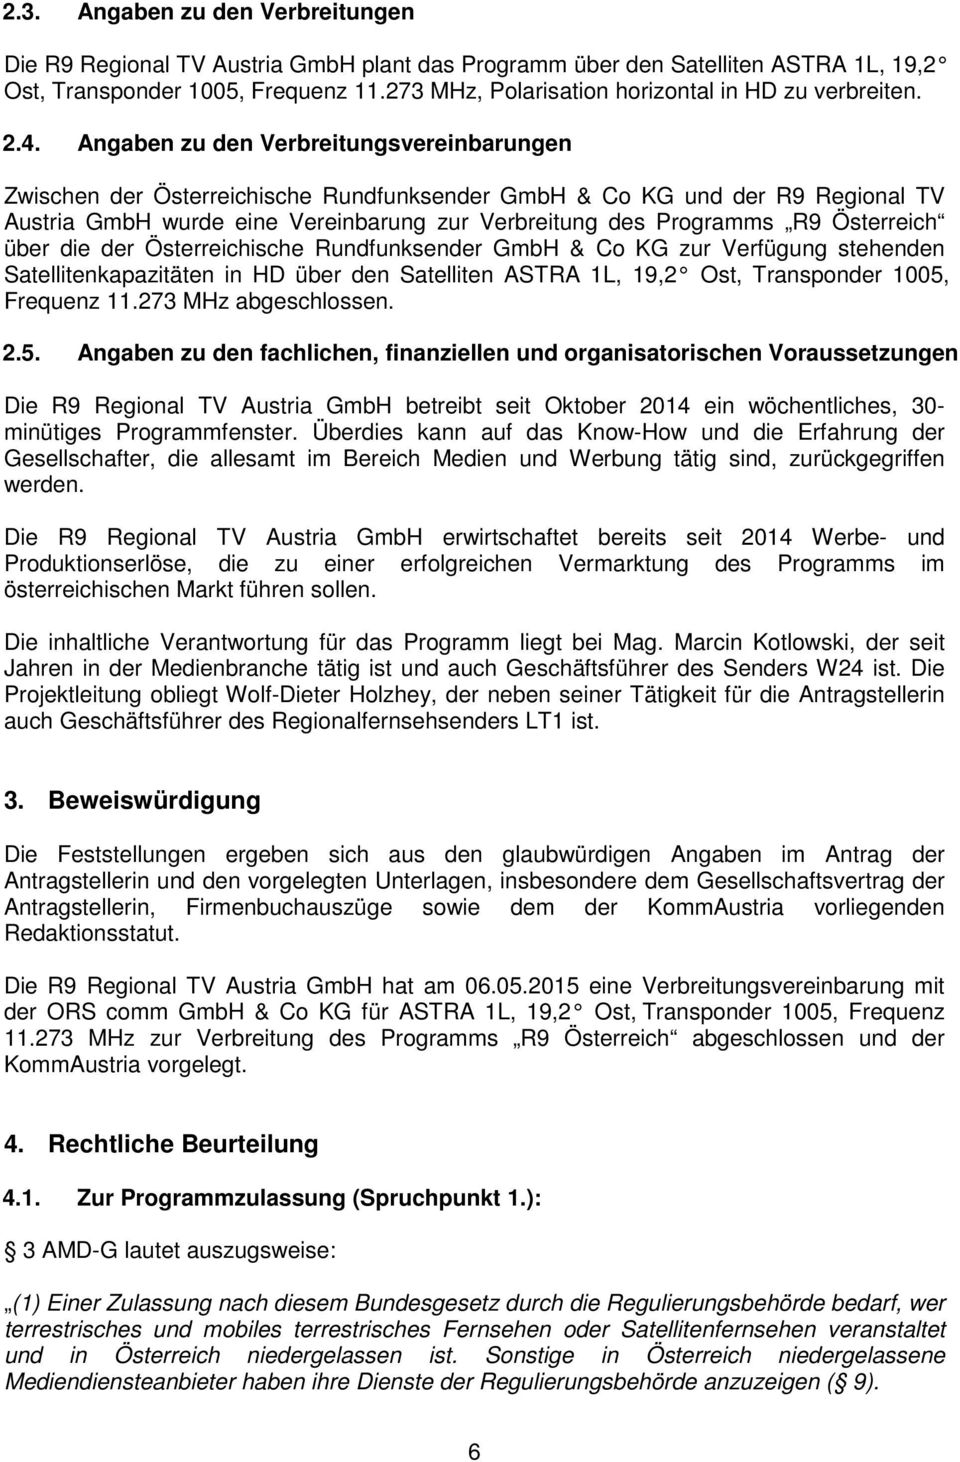 Angaben zu den Verbreitungsvereinbarungen Zwischen der Österreichische Rundfunksender GmbH & Co KG und der R9 Regional TV Austria GmbH wurde eine Vereinbarung zur Verbreitung des Programms R9